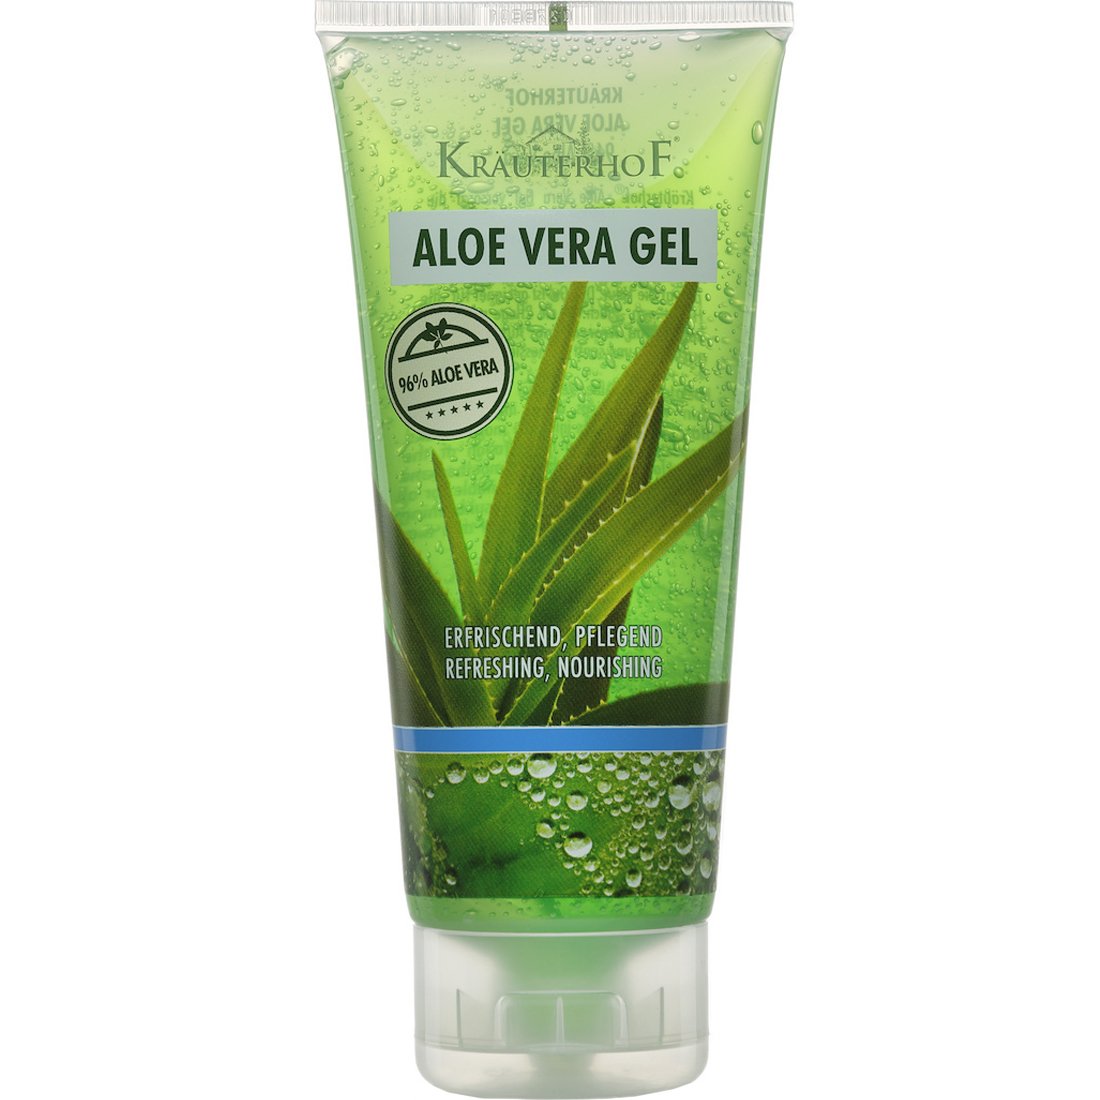 Krauterhof Aloe Vera Gel Ενυδατικό & Καταπραϋντικό Gel Αλόης σε Περιεκτικότητα 96% για Ολοκληρωμένη Φυσική Περιποίηση του Καταπονημένου Δέρματος 200ml